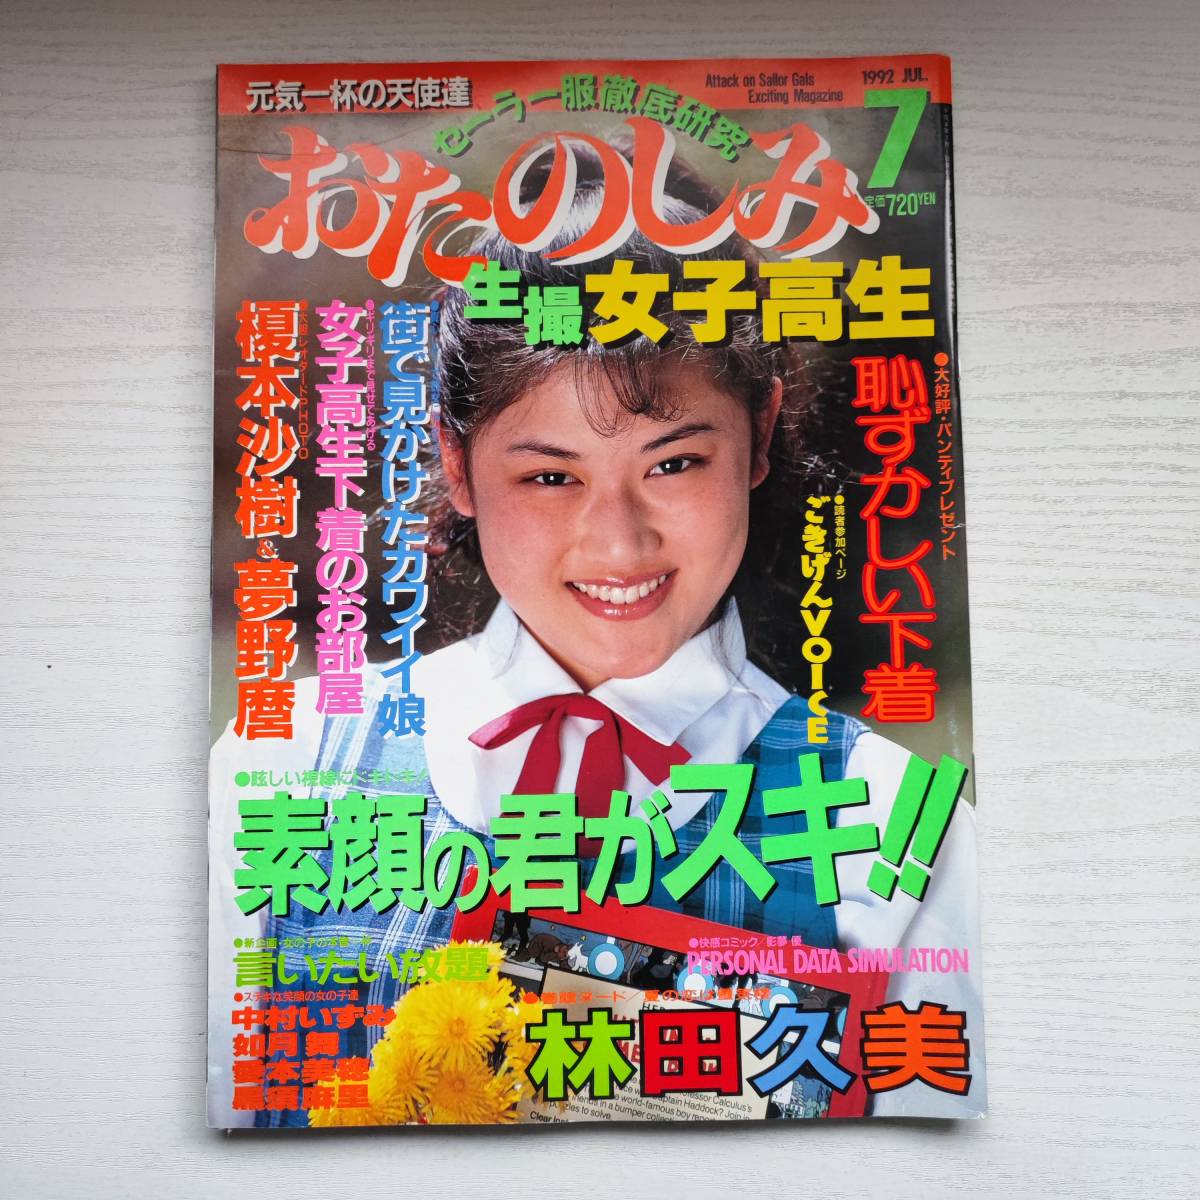 【雑誌】おたのしみ 生撮 女子高生 1992年7月 考友社出版